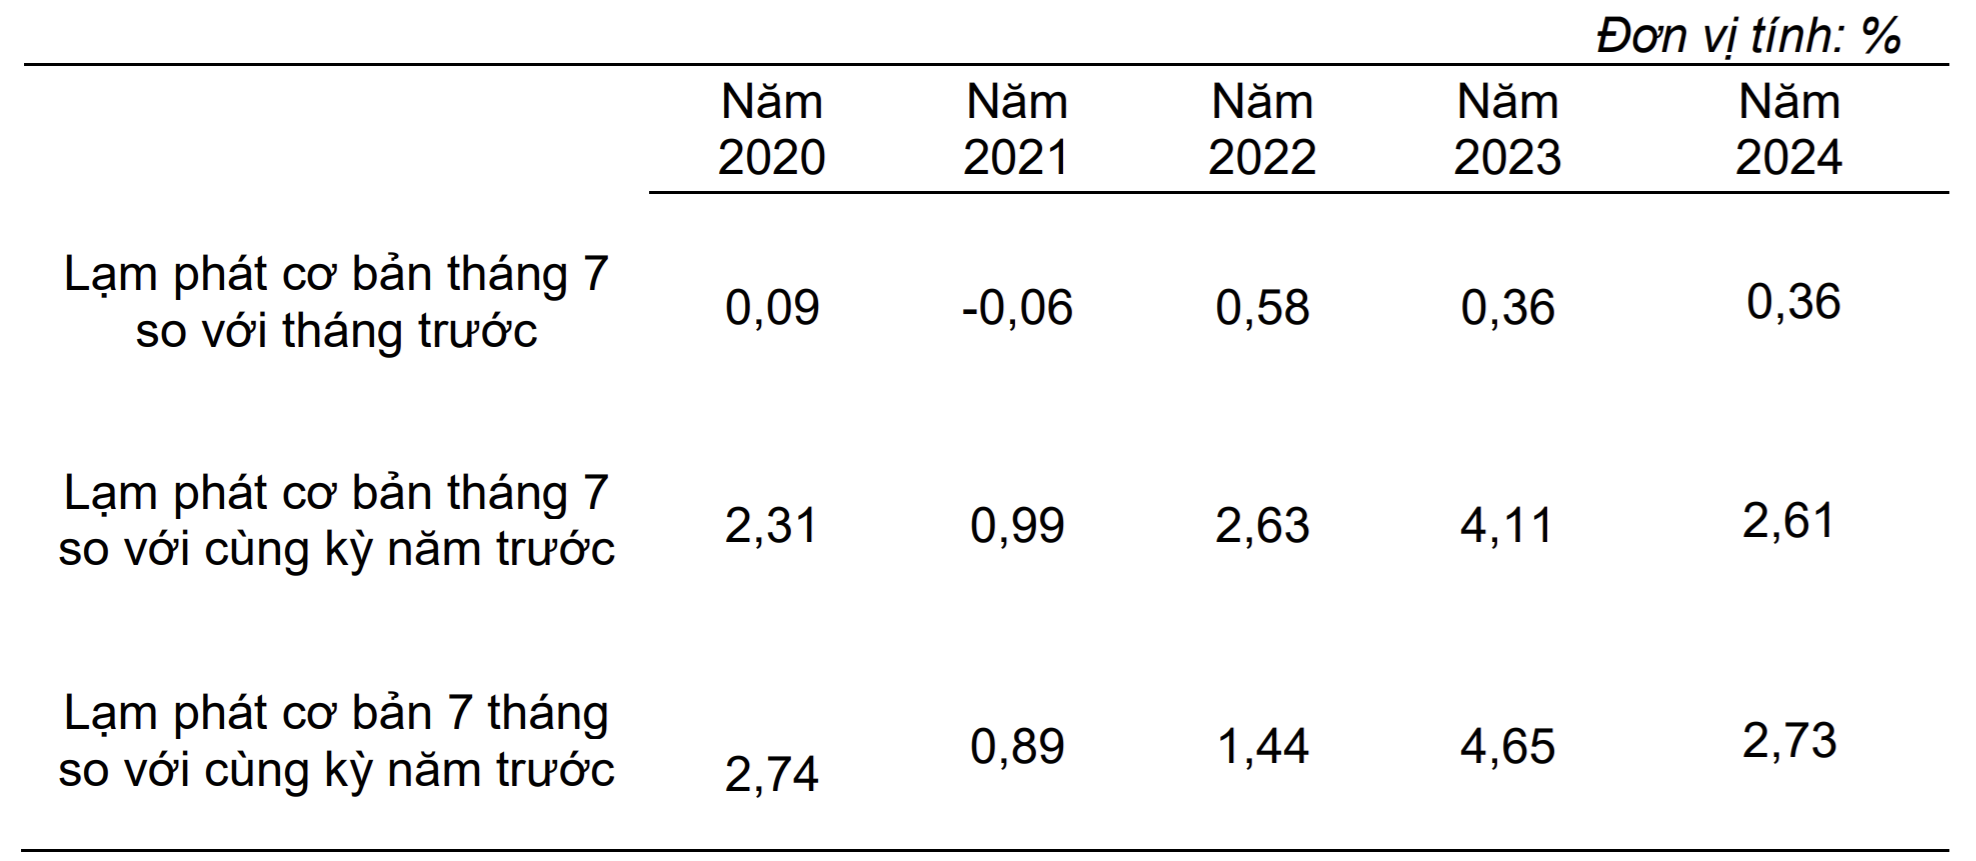 Lạm phát cơ bản tháng 7 và 7 tháng từ năm 2020 đến năm 2024